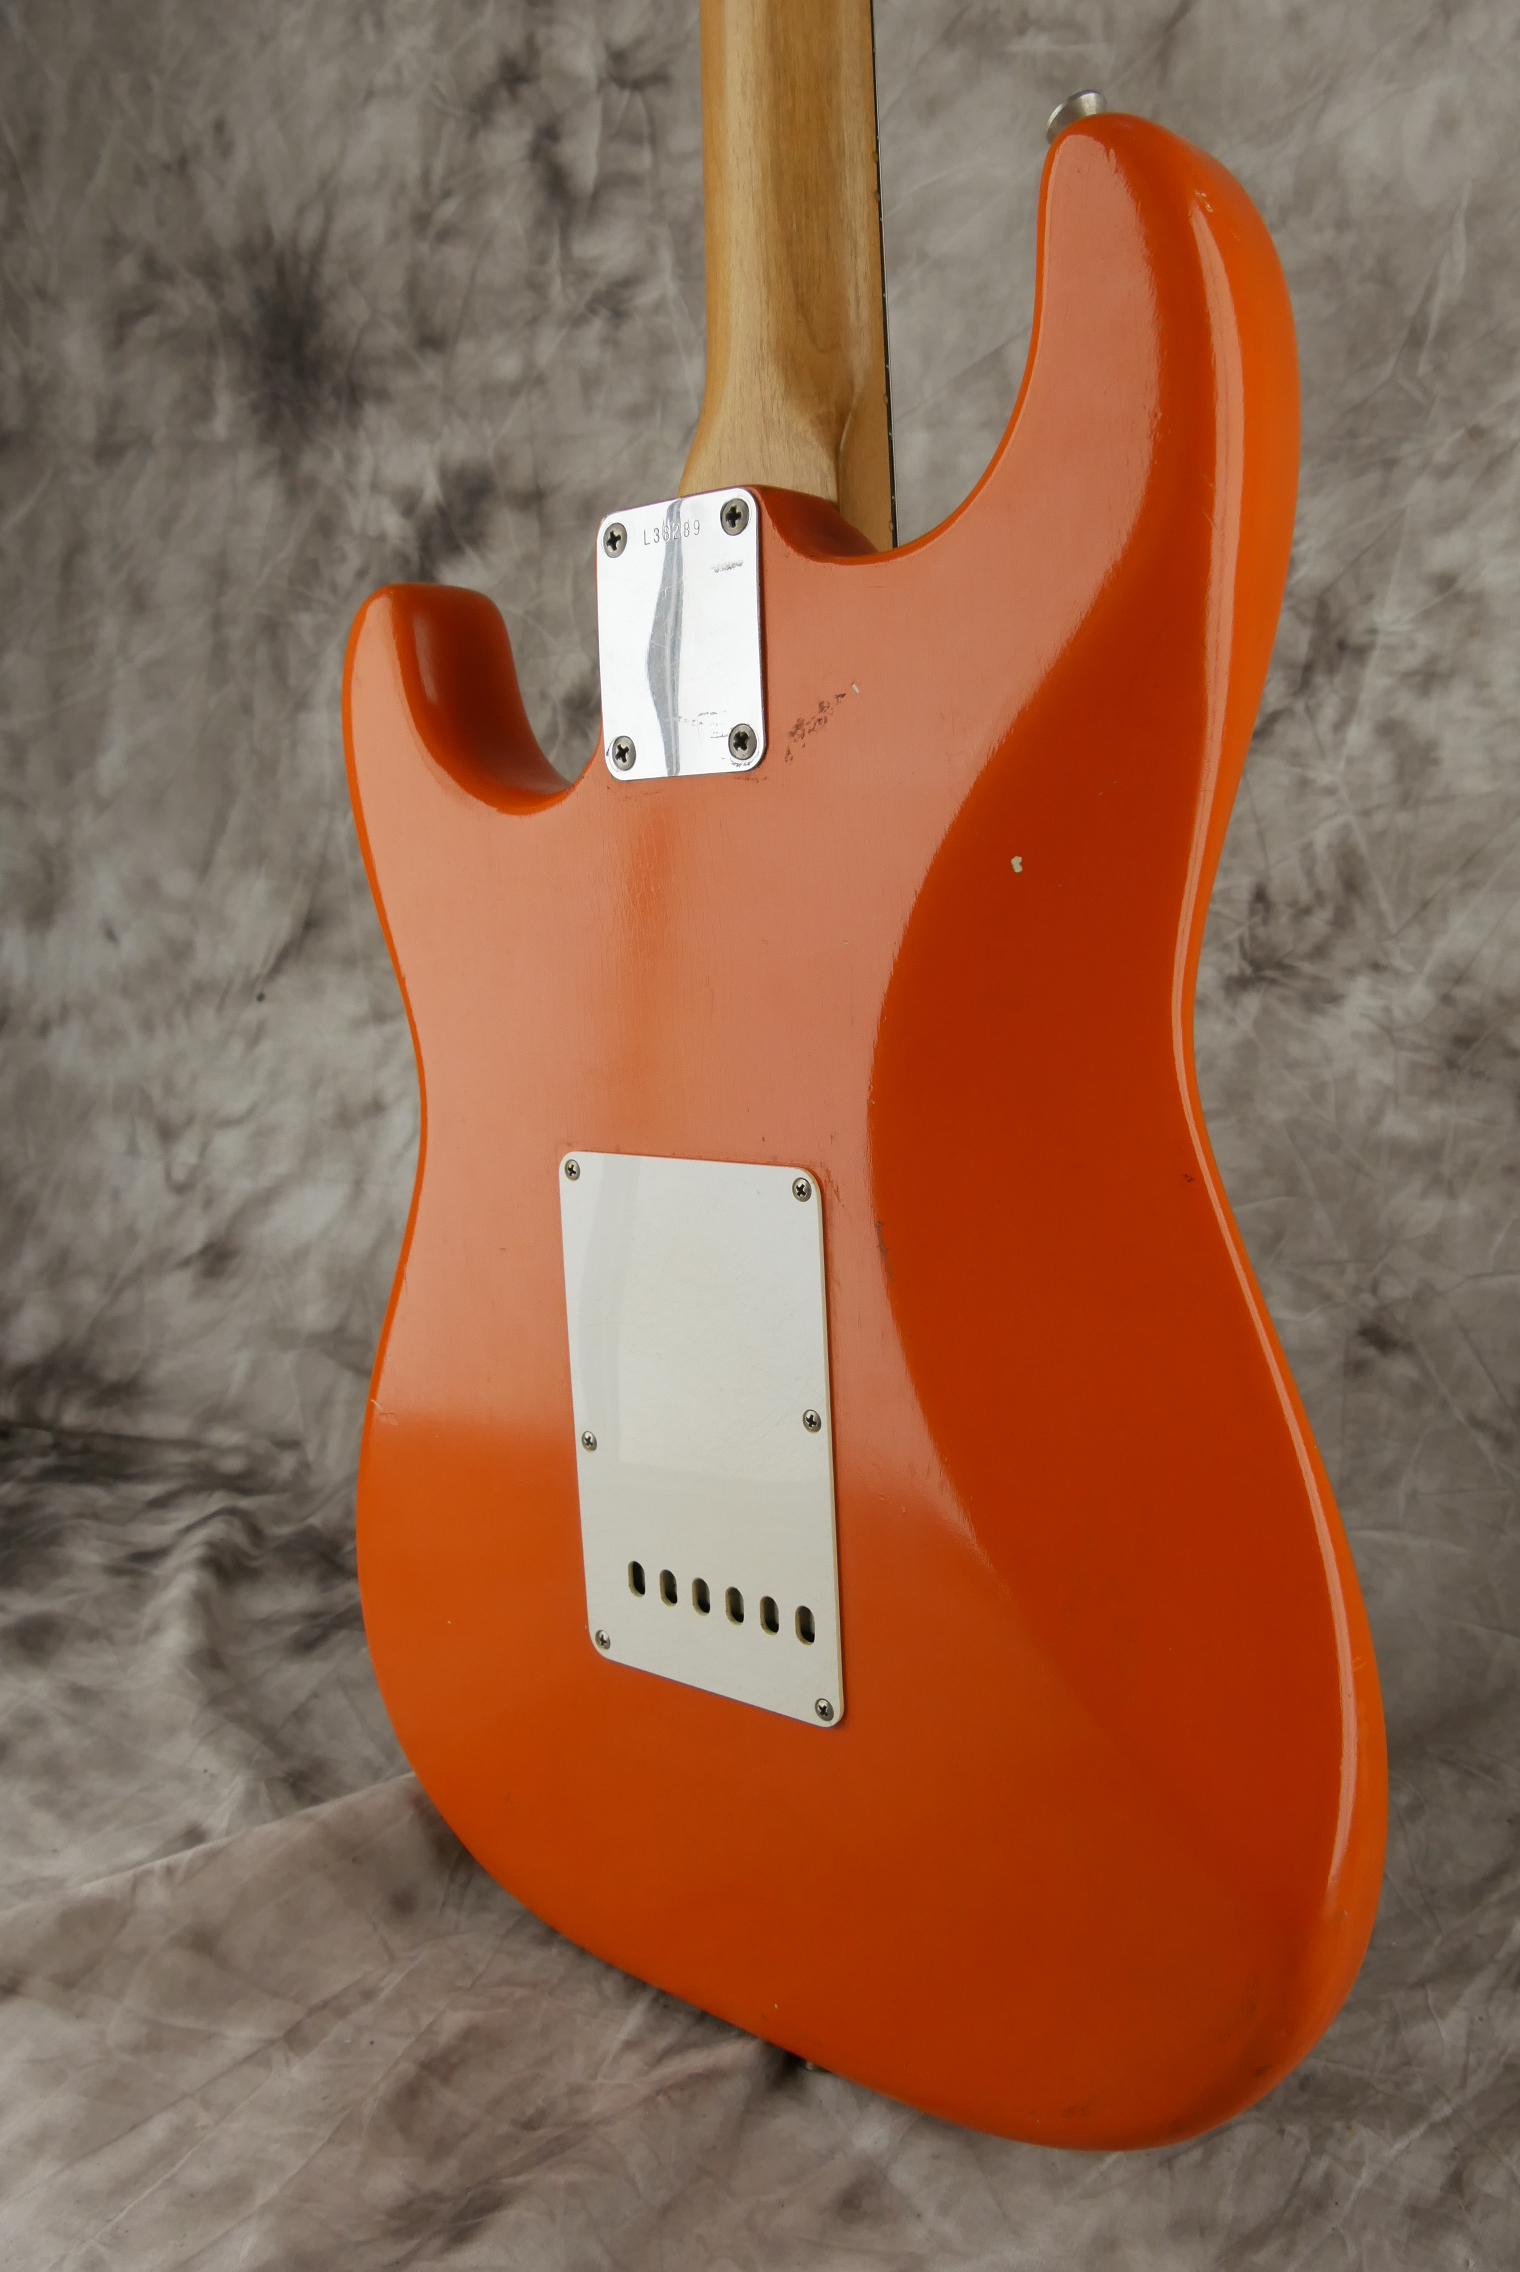 Fender-Stratocaster-1964-orange-refinish-008.JPG